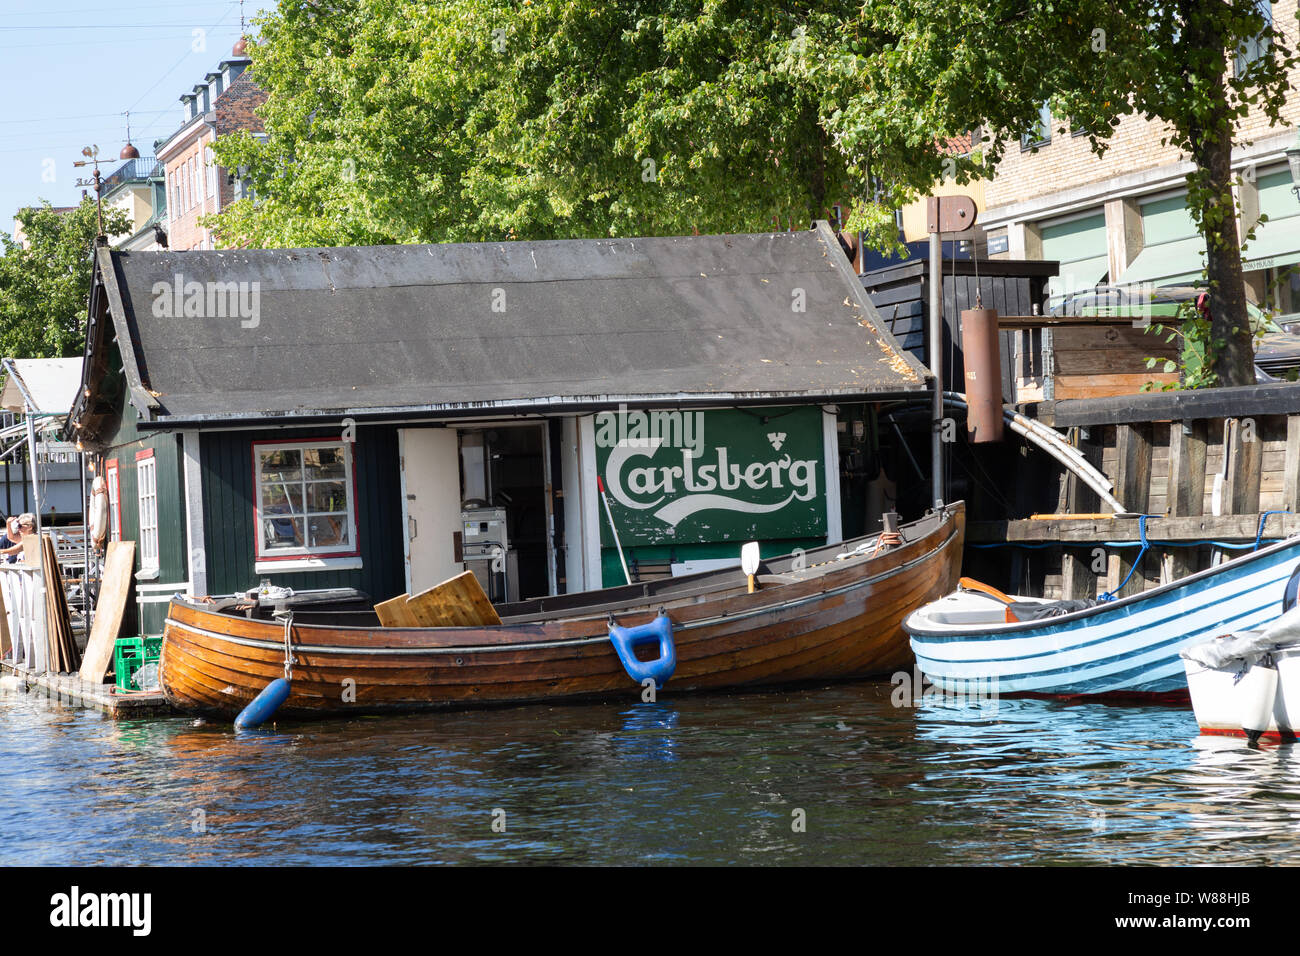 Eine schwimmende Bar Werbung Carlberg Lagerbier, Christianshavn, Kopenhagen Dänemark Skandinavien Europa Stockfoto